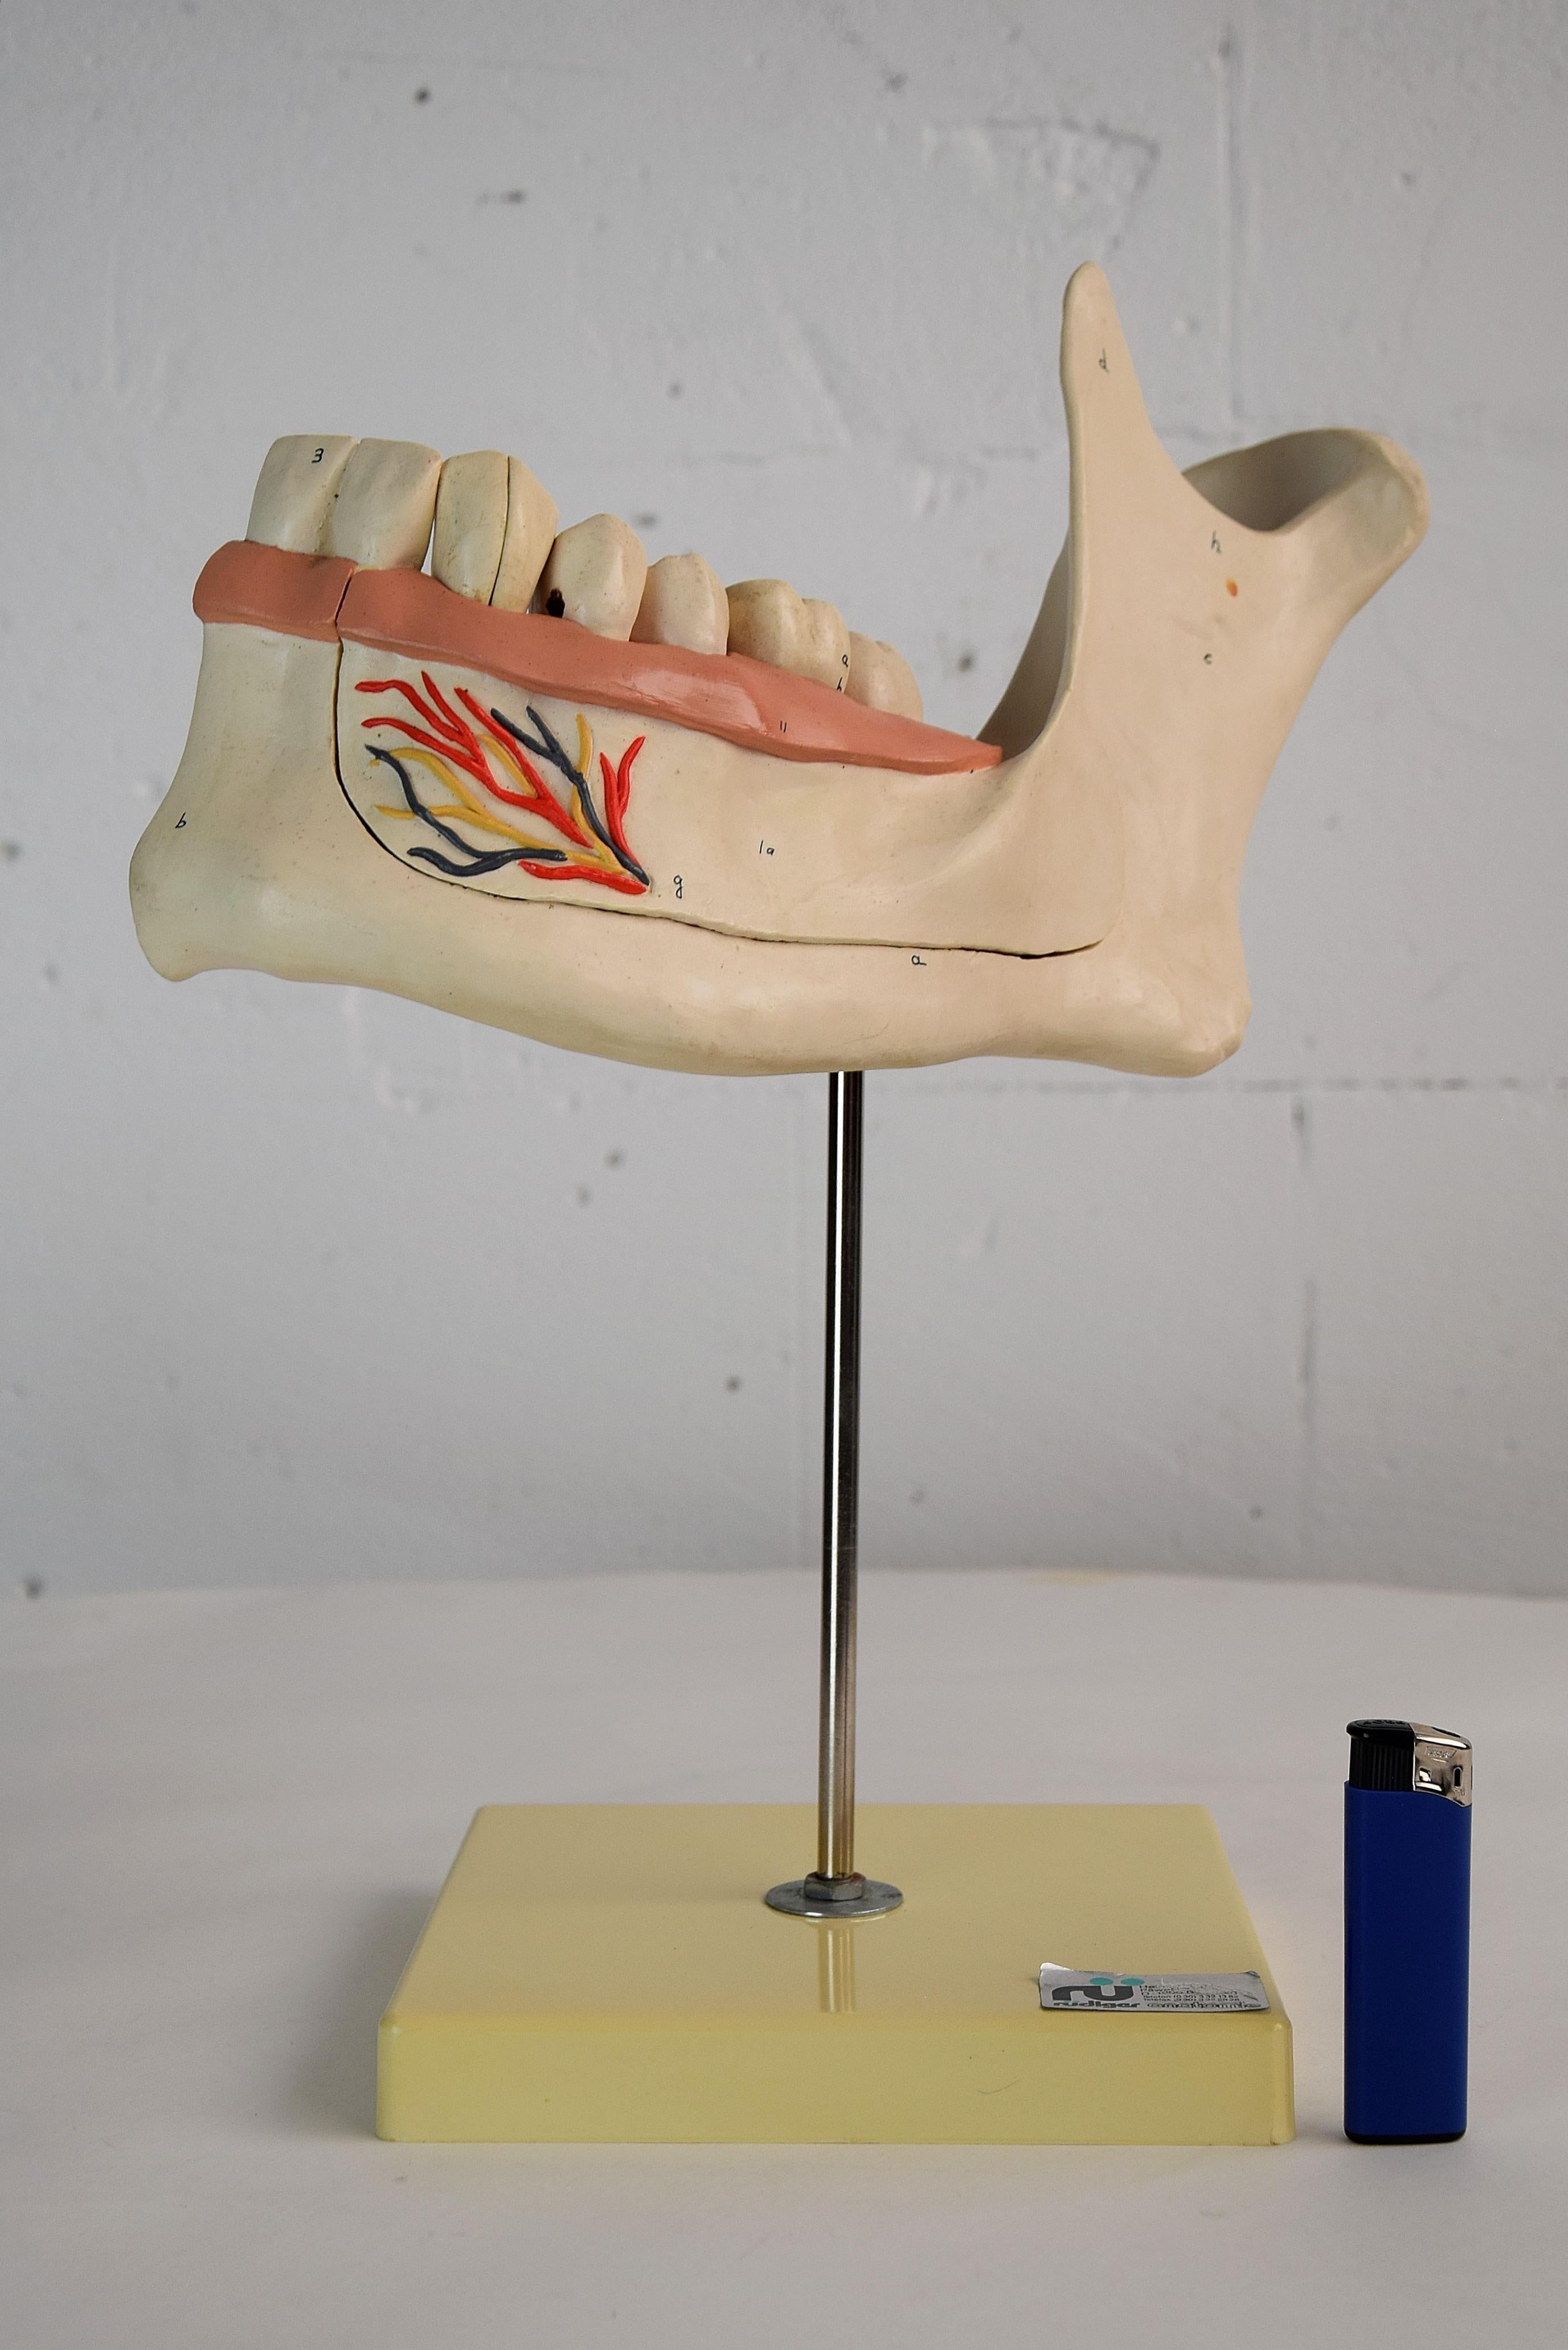 Großes anatomisches Kieferlehrmodell aus den 1960er Jahren in perfektem Zustand. Diese schöne Harzkiefer kann wie auf den Bildern gezeigt auseinandergenommen werden. Es wurde in den 1960er Jahren von Rudiger Anatomie in Berlin, Westdeutschland,